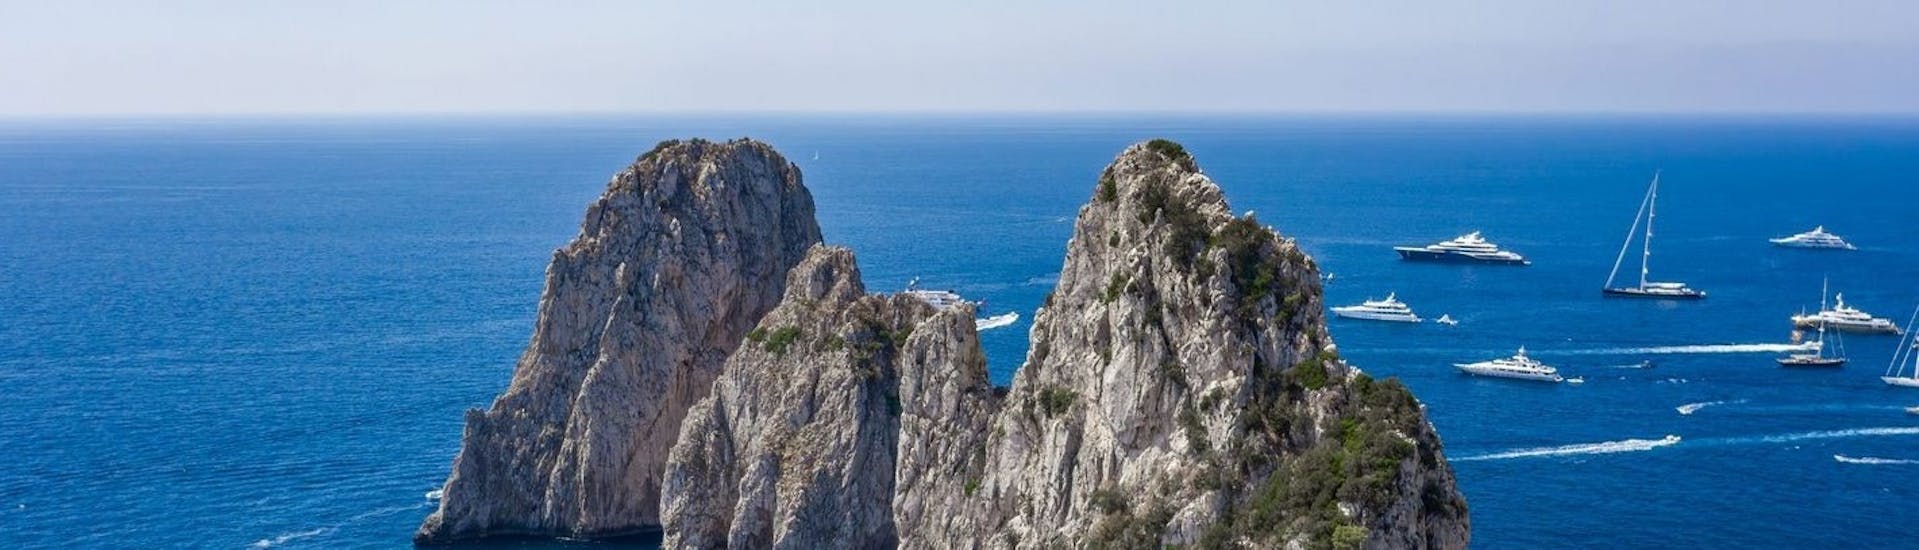 Bootstour von Capri - Blaue Grotte mit Sightseeing.